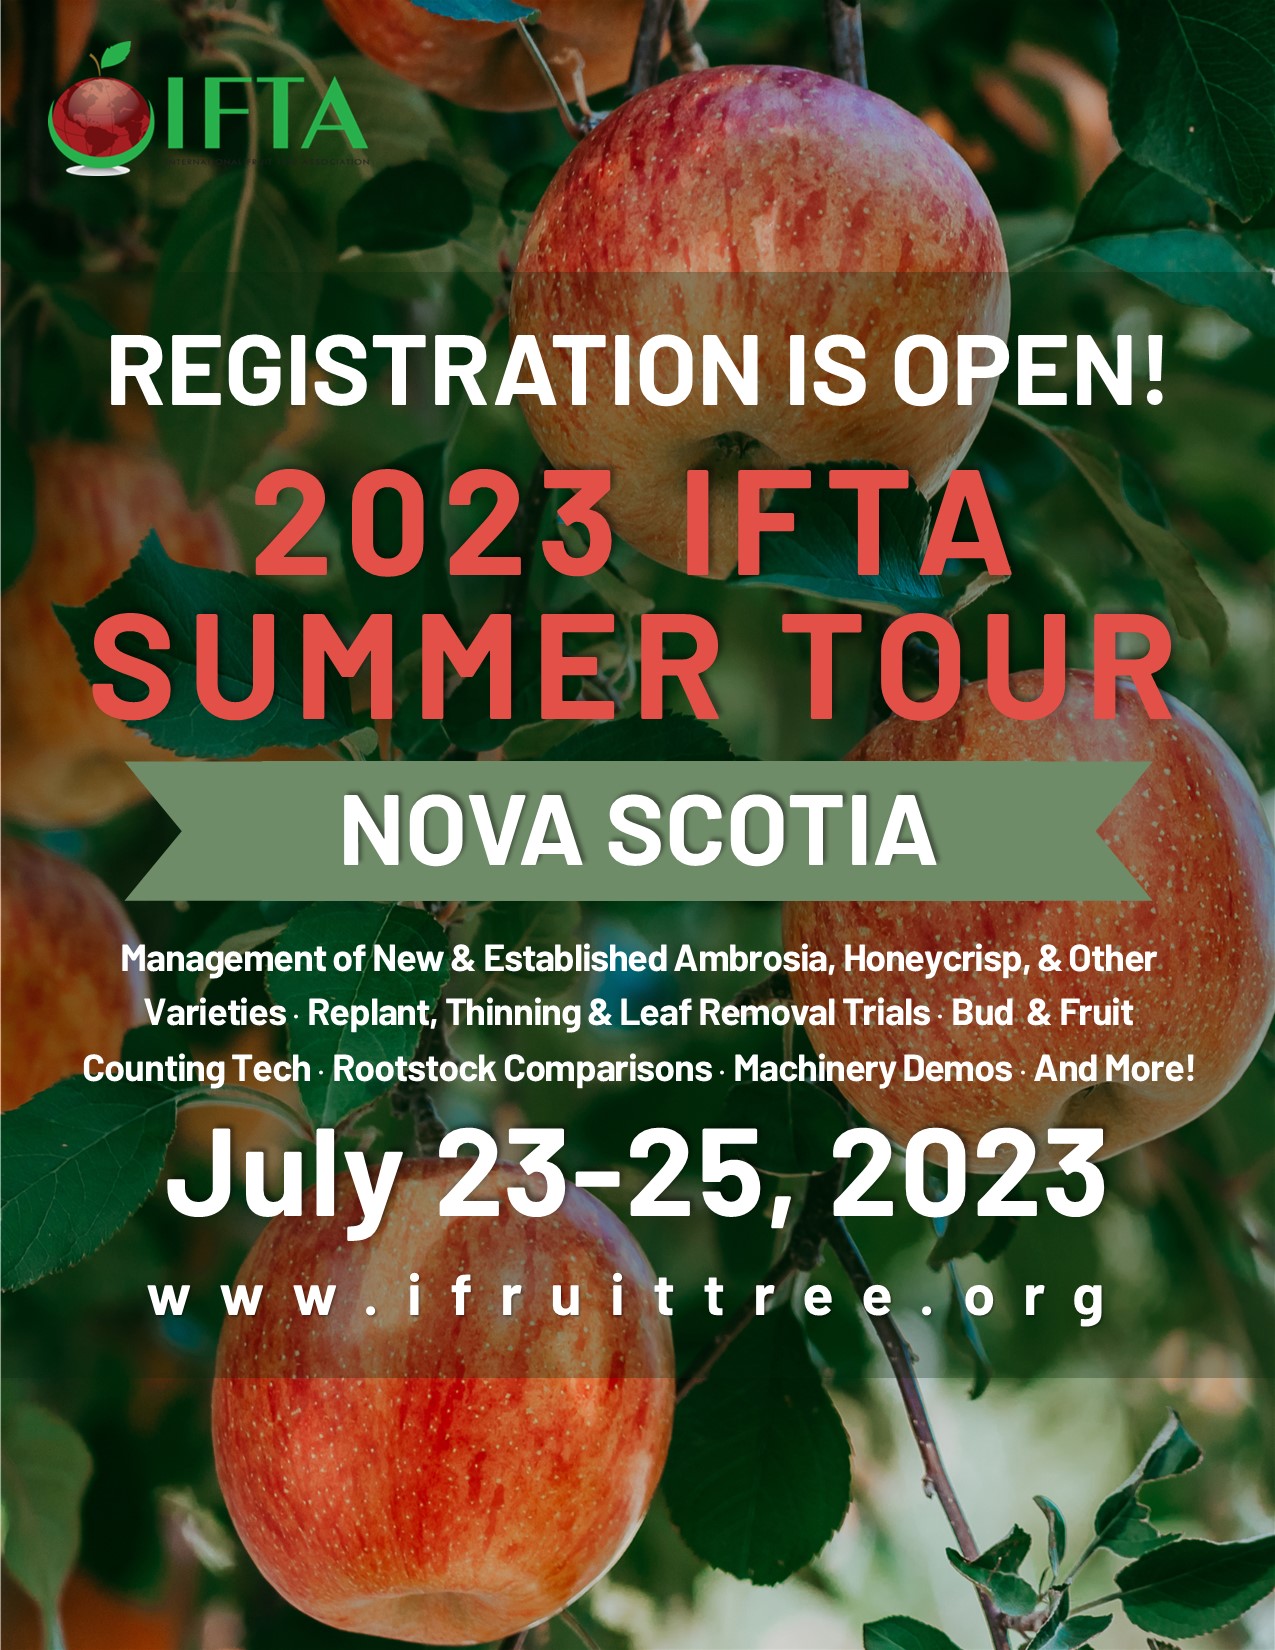 Nova Scotia 2023 Registration Open - 4-5